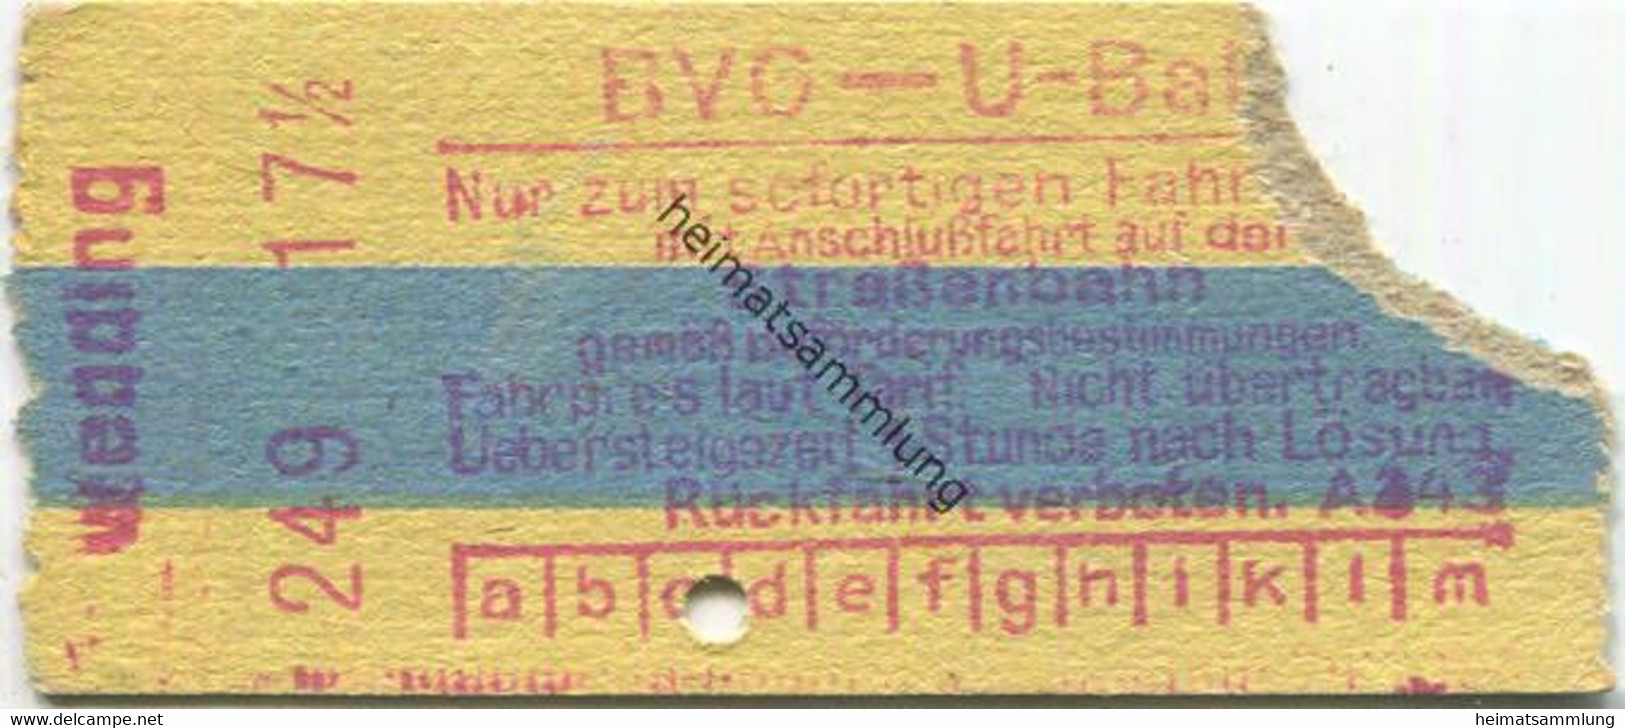 Deutschland - Berlin - BVG - U-Bahn - Fahrschein Mit Anschlussfahrt Auf Der Strassenbahn - Wedding - Europe